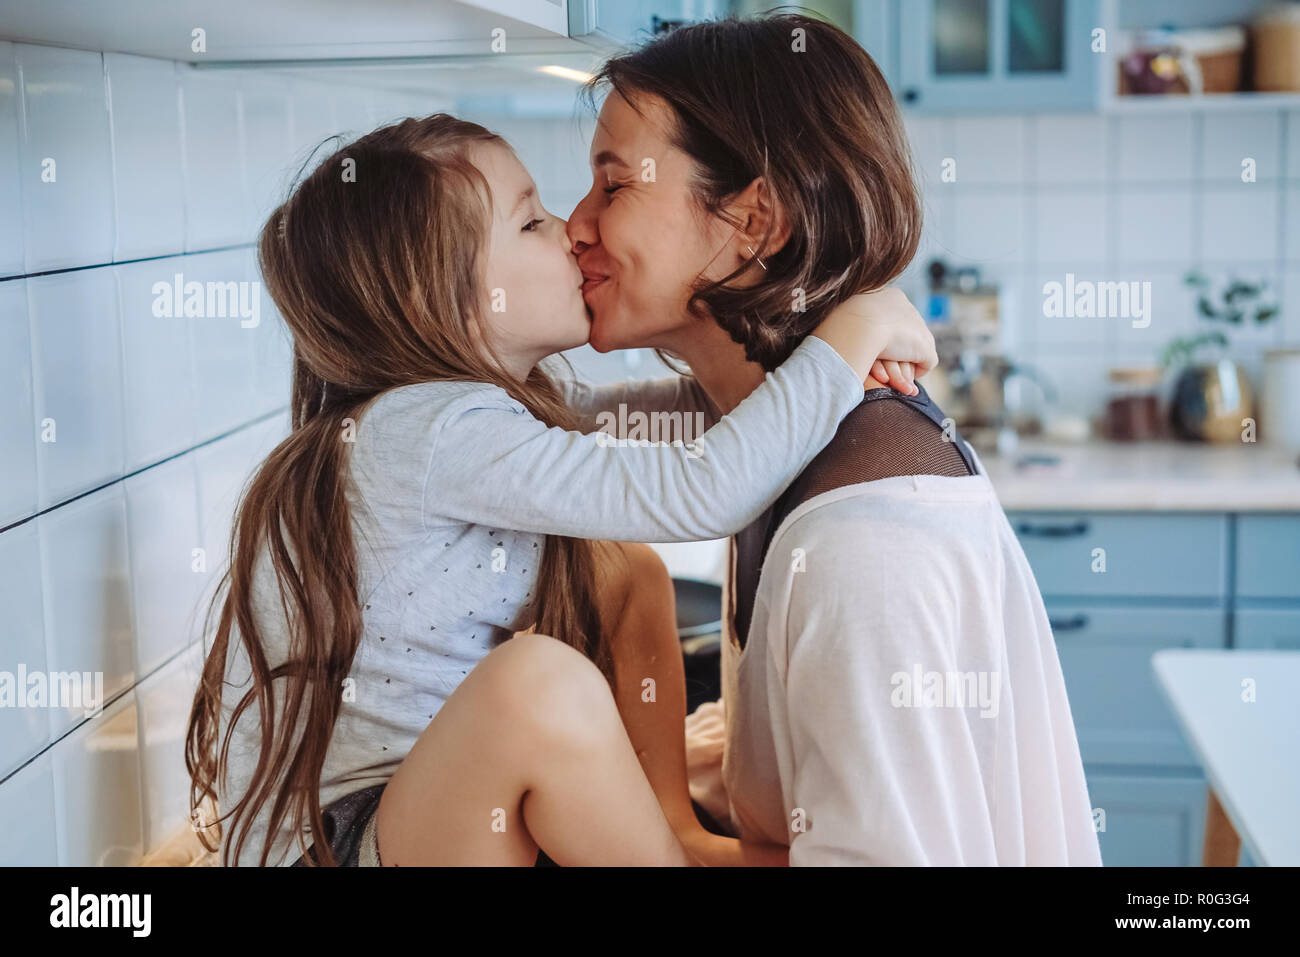 Мама с папой занимаются любовью. Мама целует дочь. Мама и дочь поцелуй с языком. Мама с дочкой поцелуй. Мама целуется с дочкой.